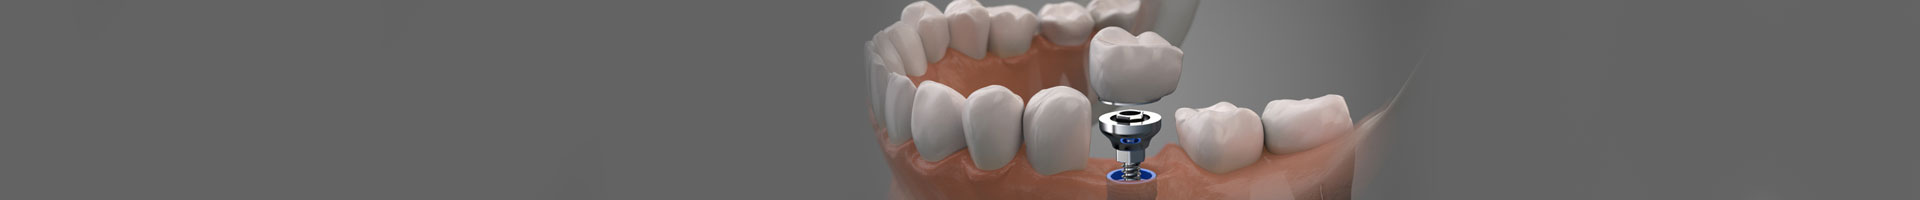 Removal of Metal Teeth